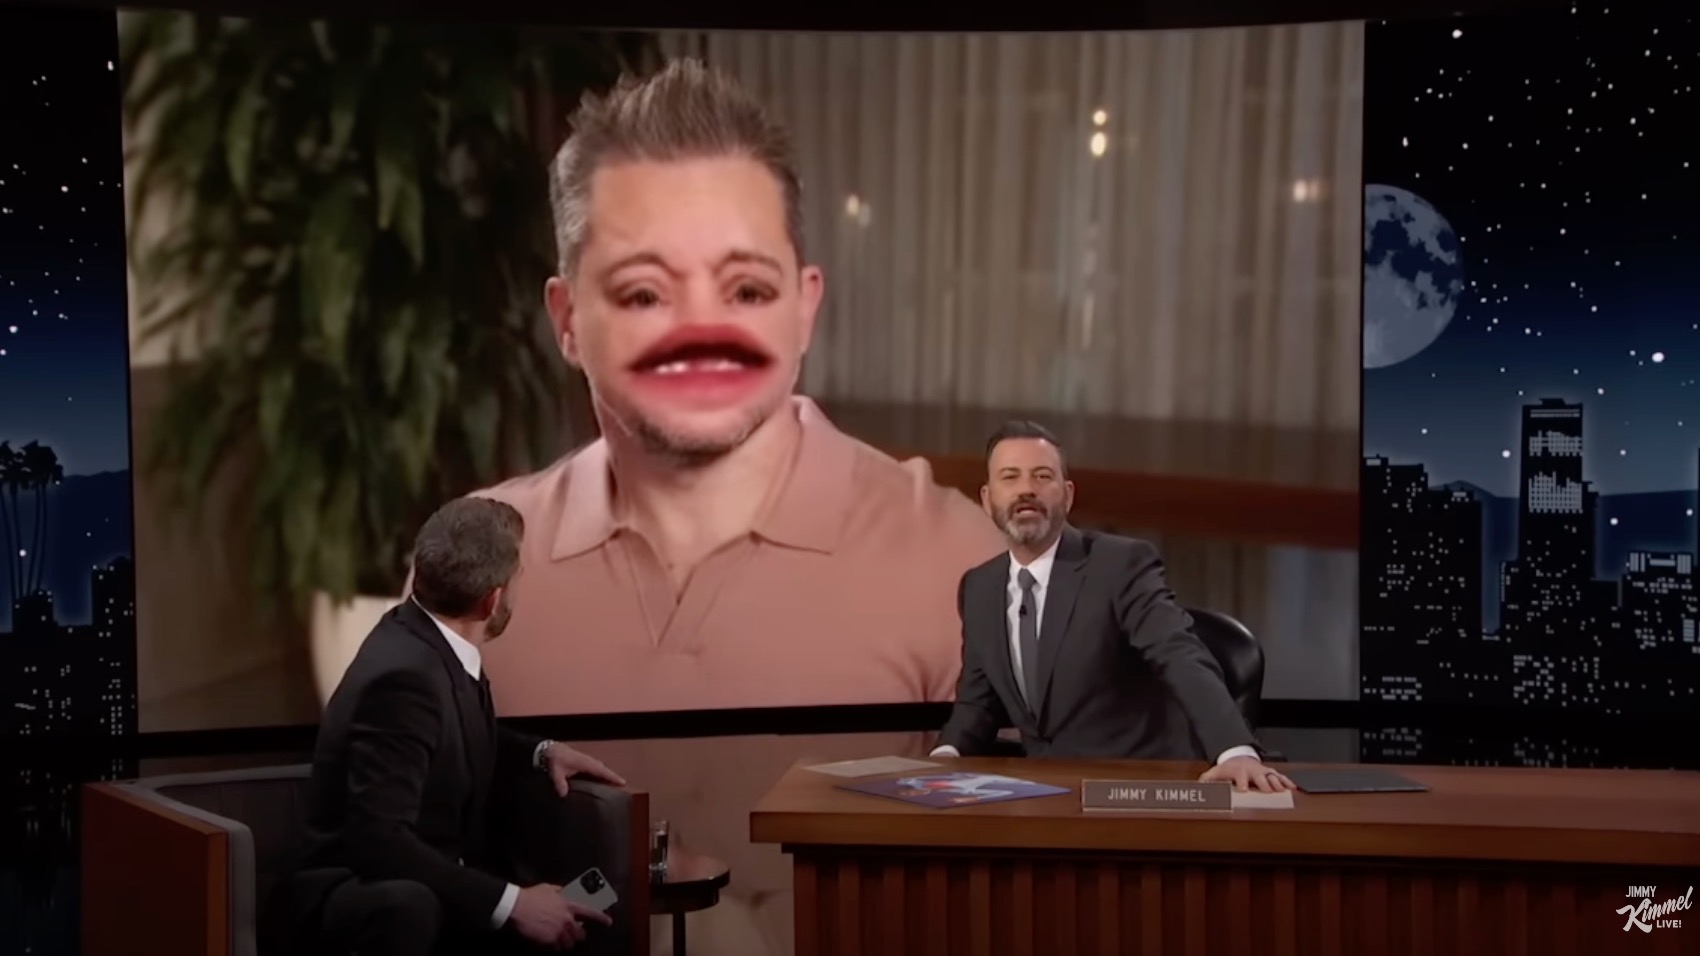 Matt Damon, Jimmy Kimmel, and Ben Affleck